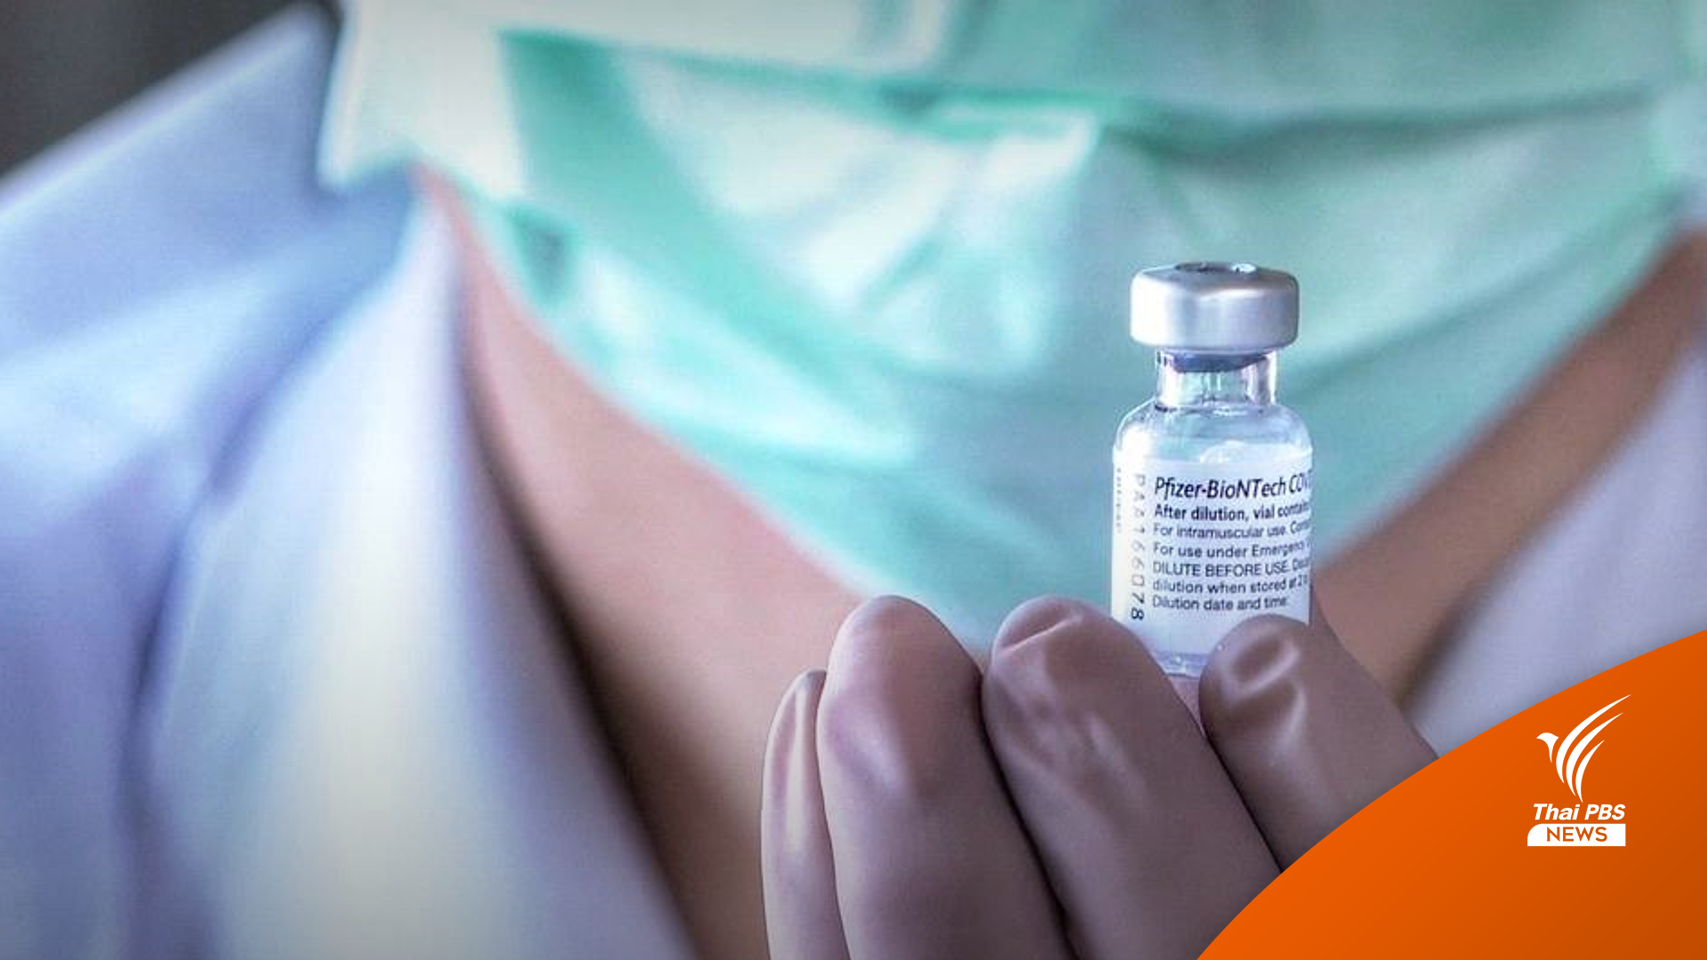 ปี'65 ดึง 23 ล้านคนฉีดวัคซีนบูสเตอร์-ปรับแนวทาง Walk-in ได้ 